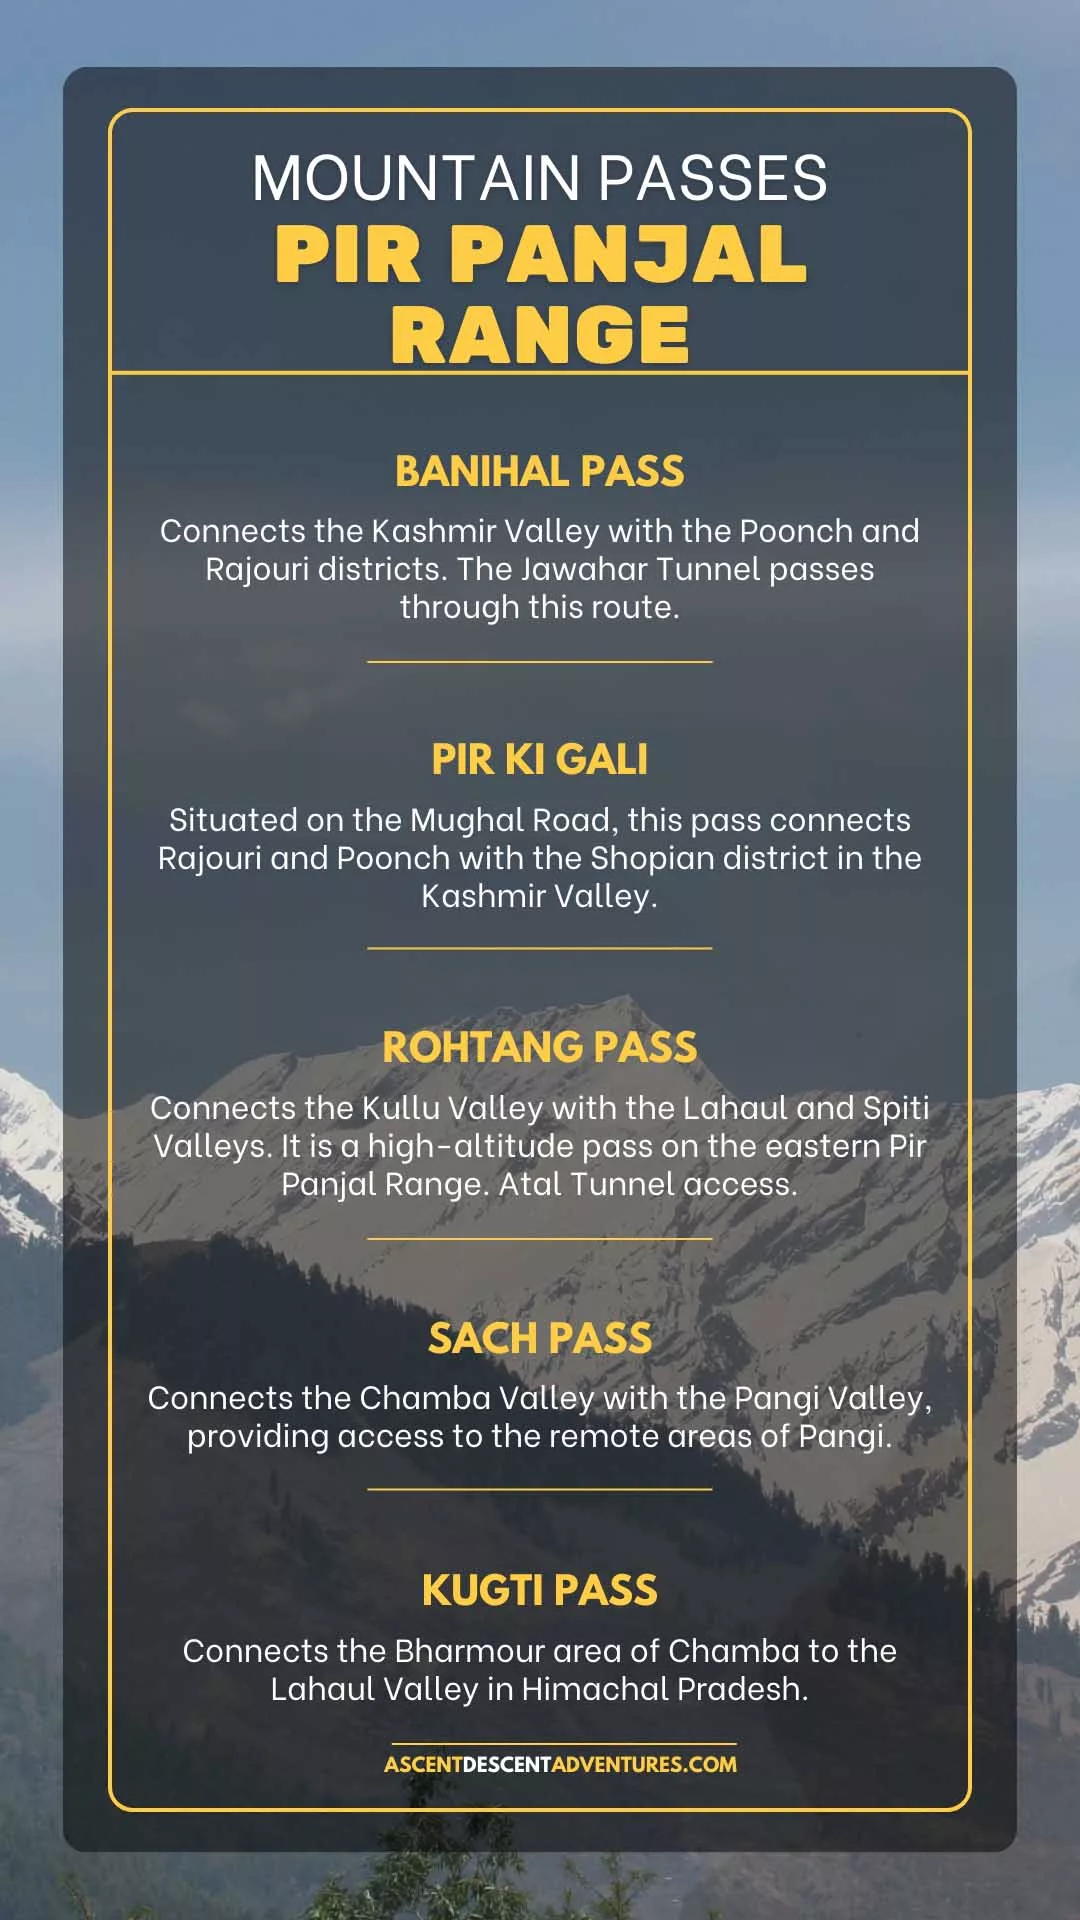 Mountain Passes Pir Panjal Range